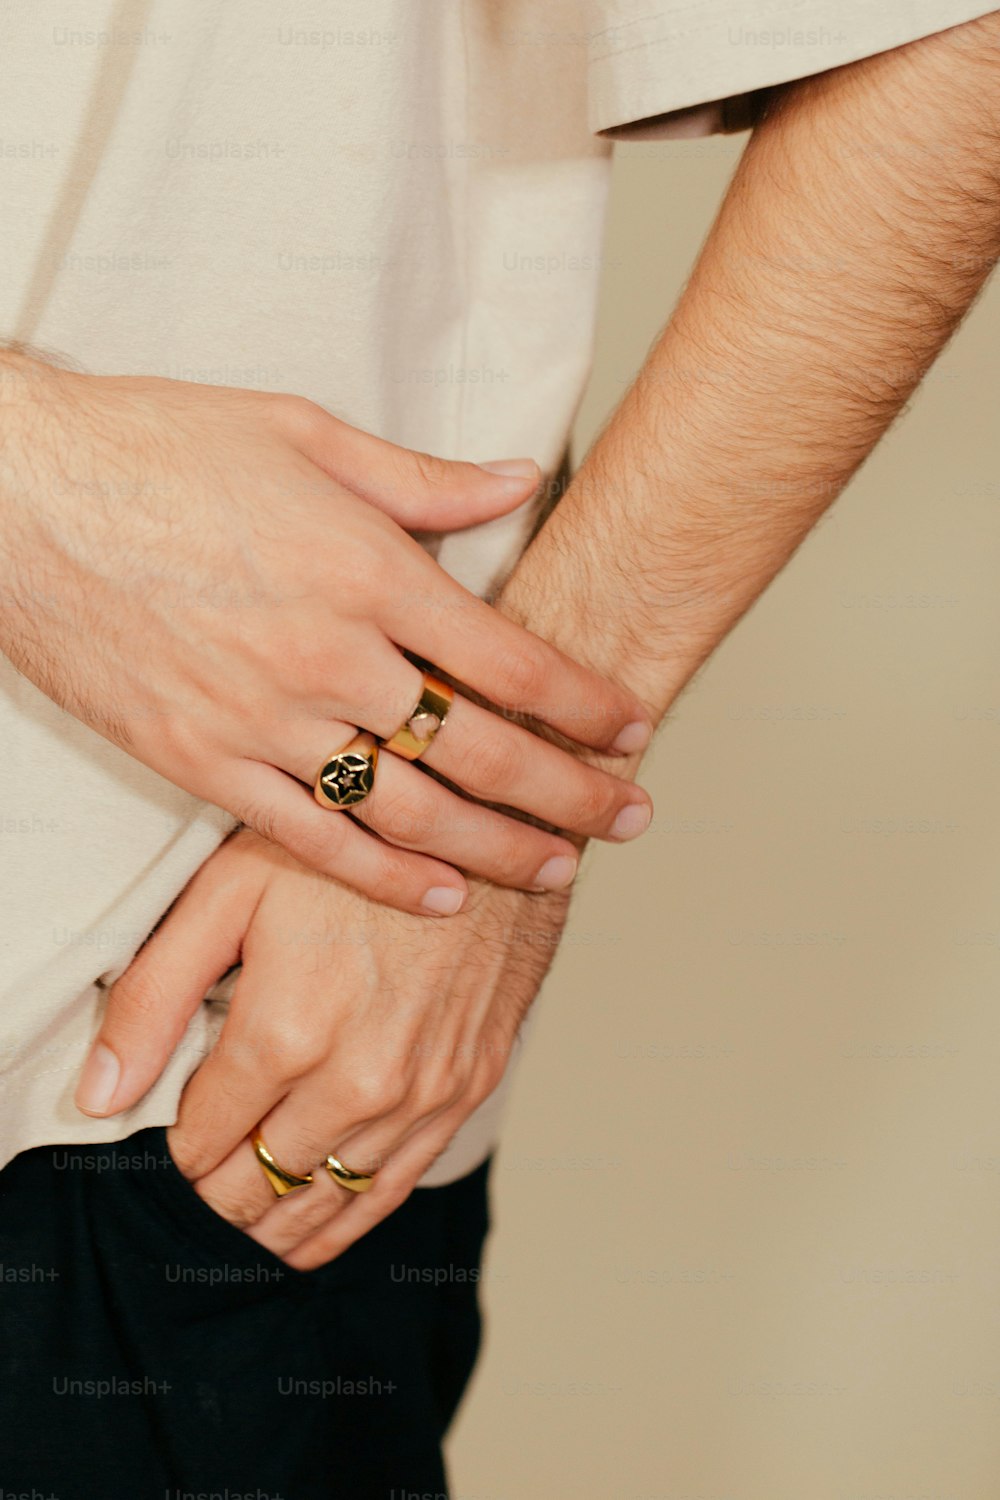 um close up de duas pessoas de mãos dadas